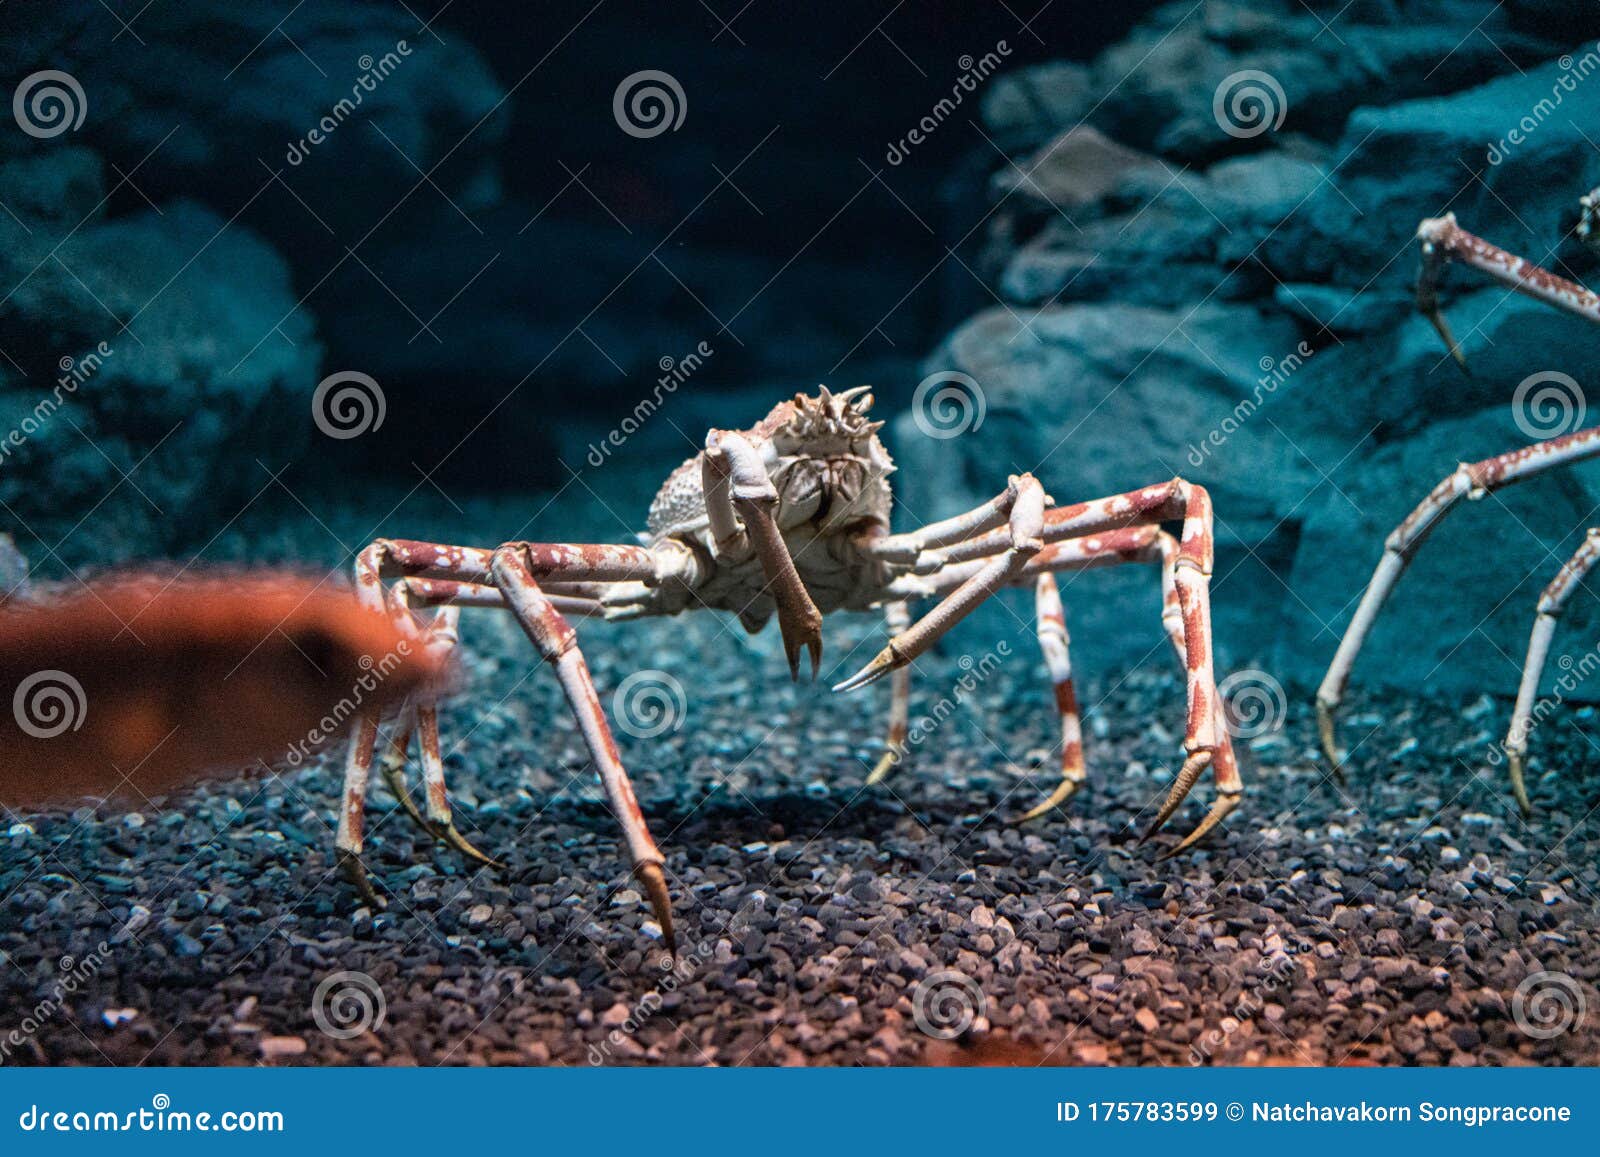 Japanese Spider Crab - Georgia Aquarium